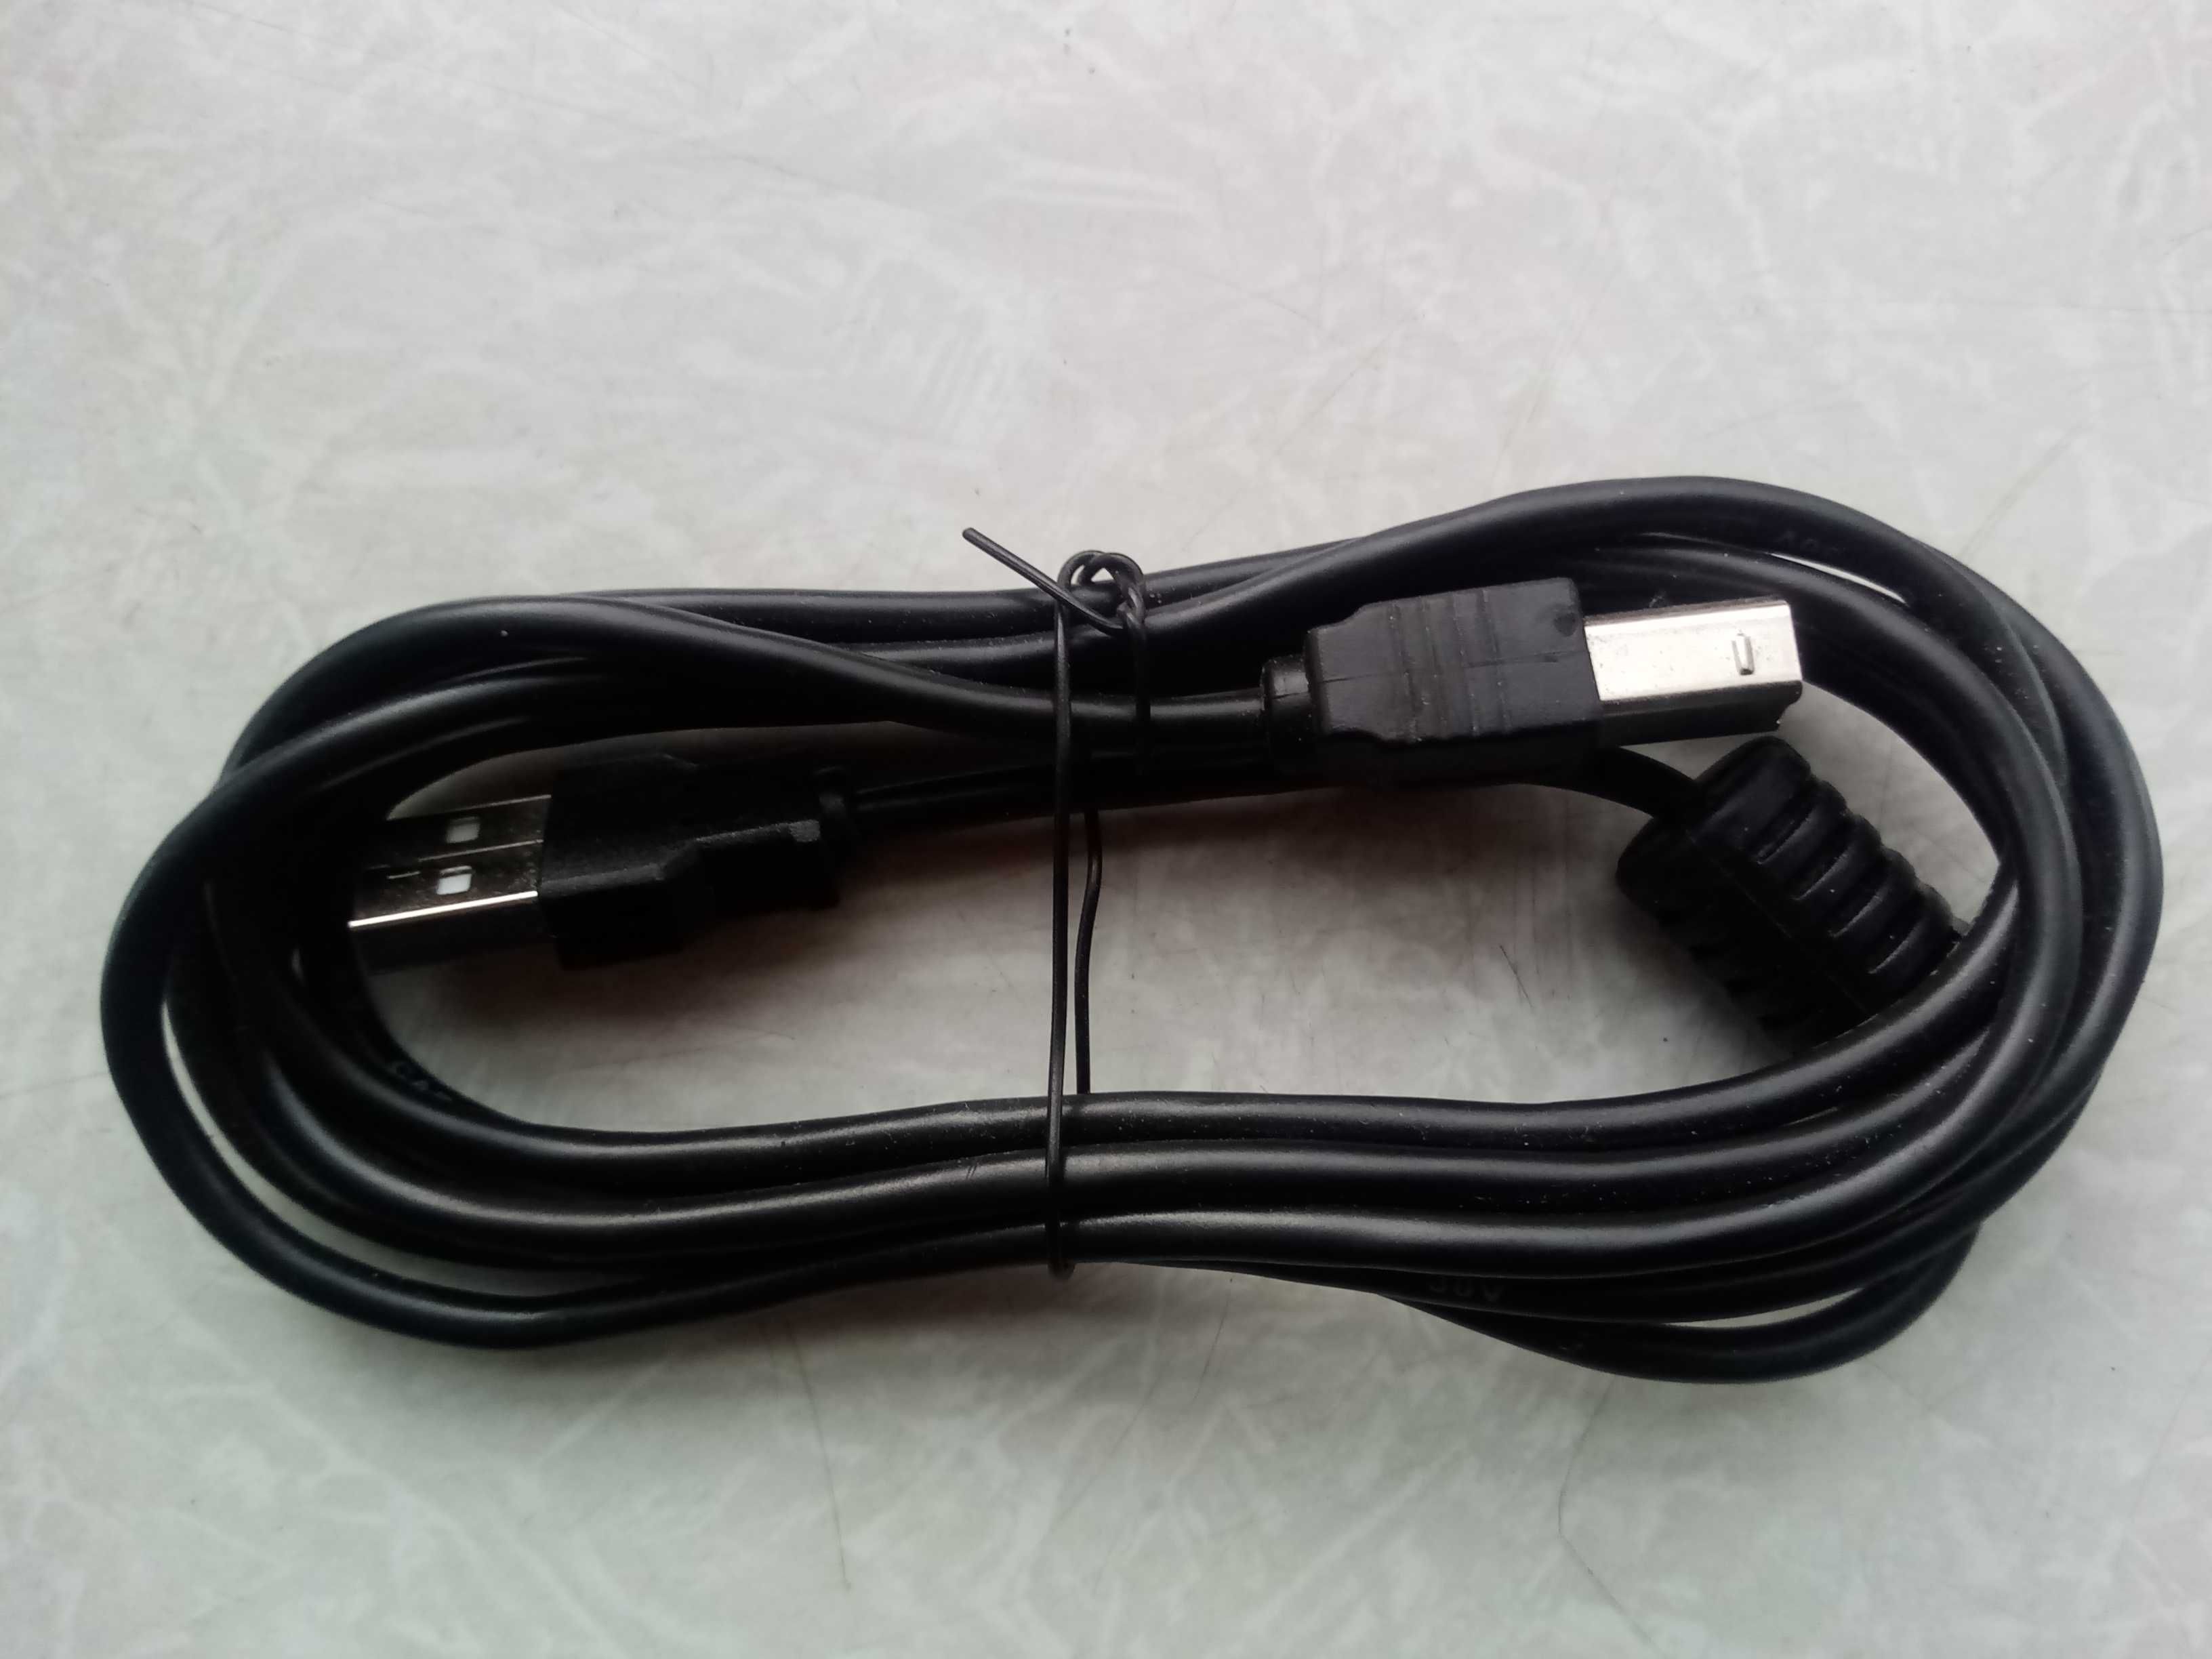 USB кабель для принтера, сканера, МФУ 1.8 m